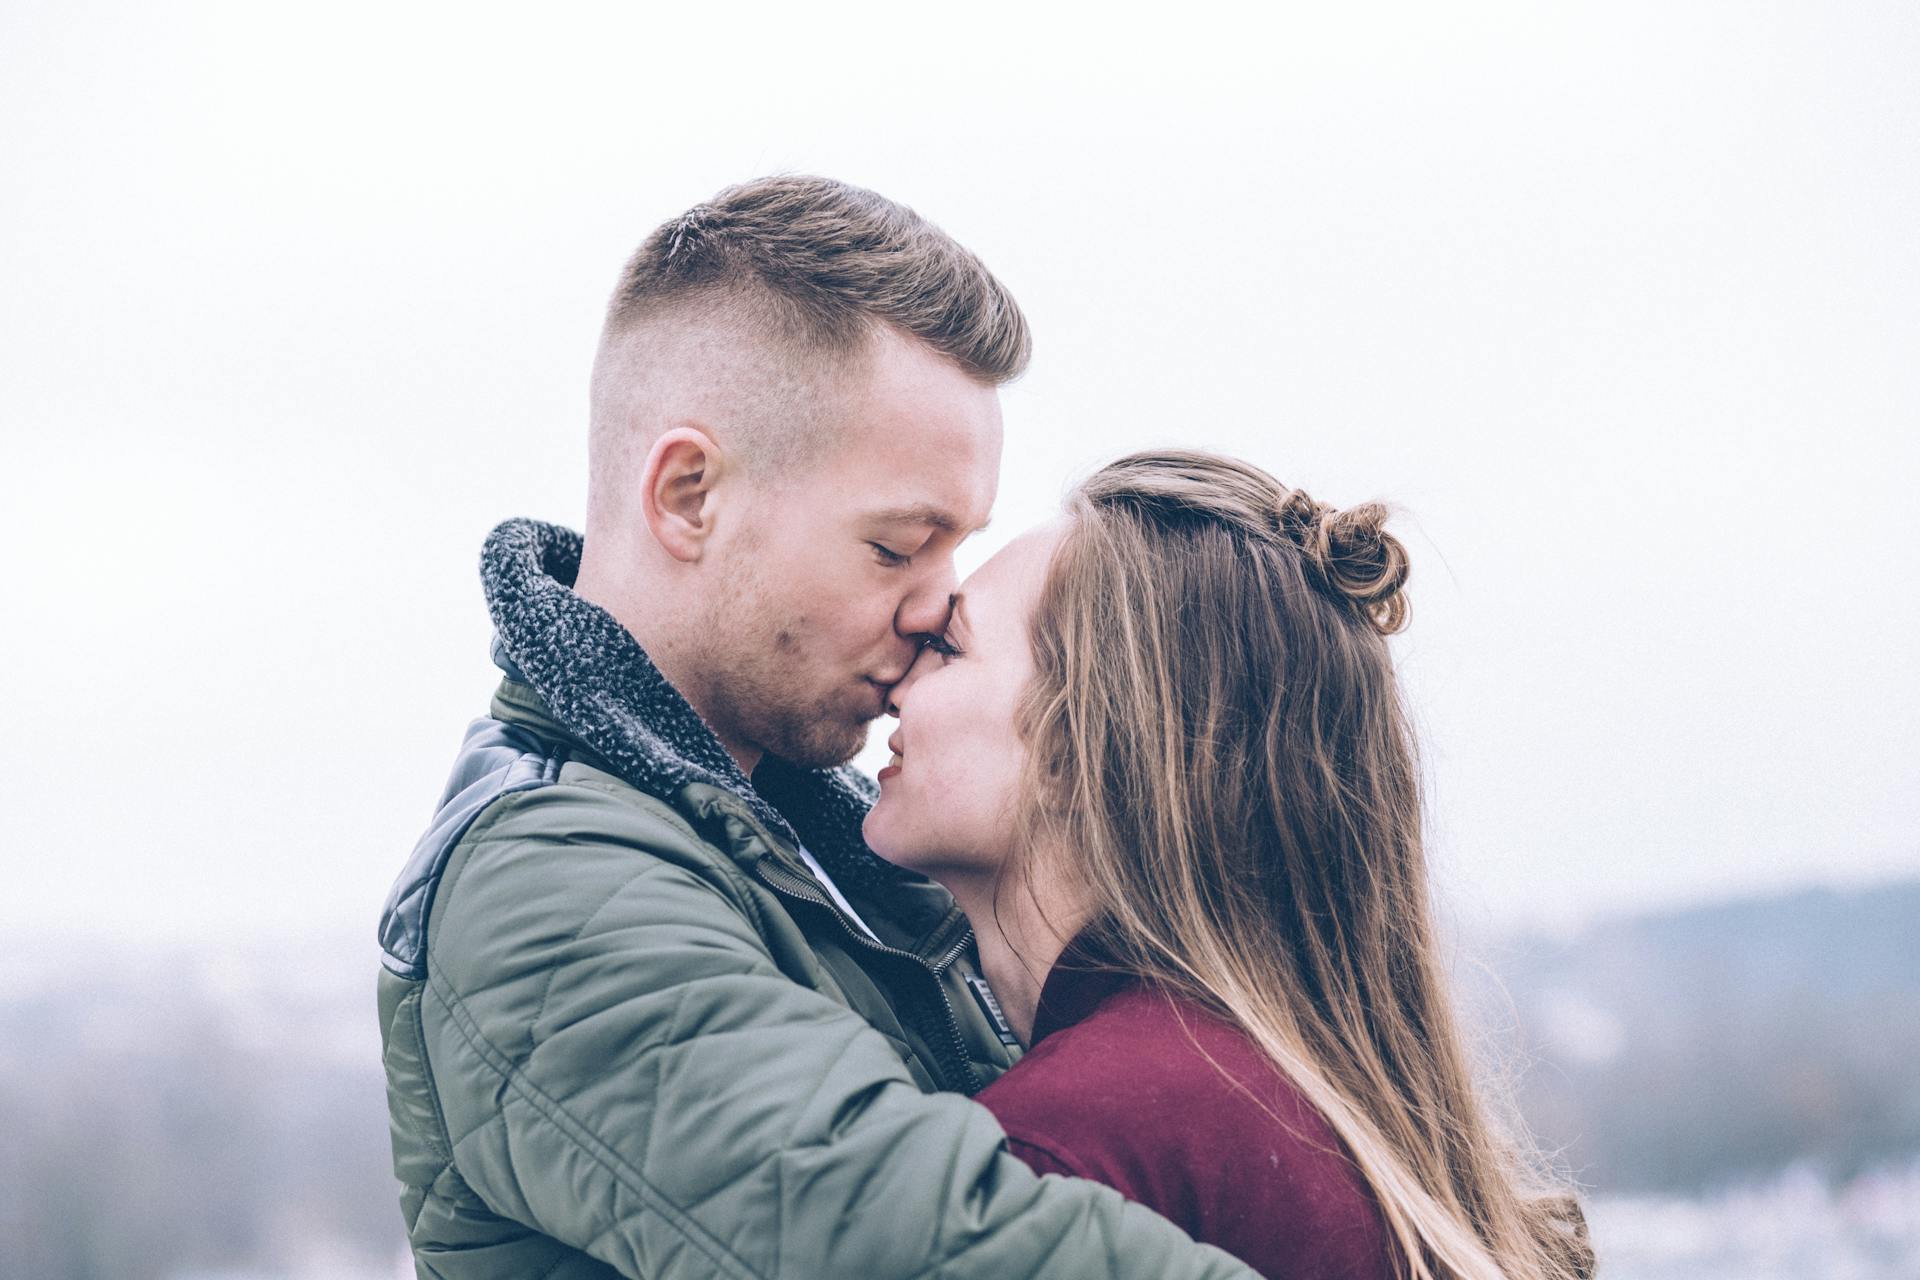 Un hombre besa a su novia en la nariz | Fuente: Pexels